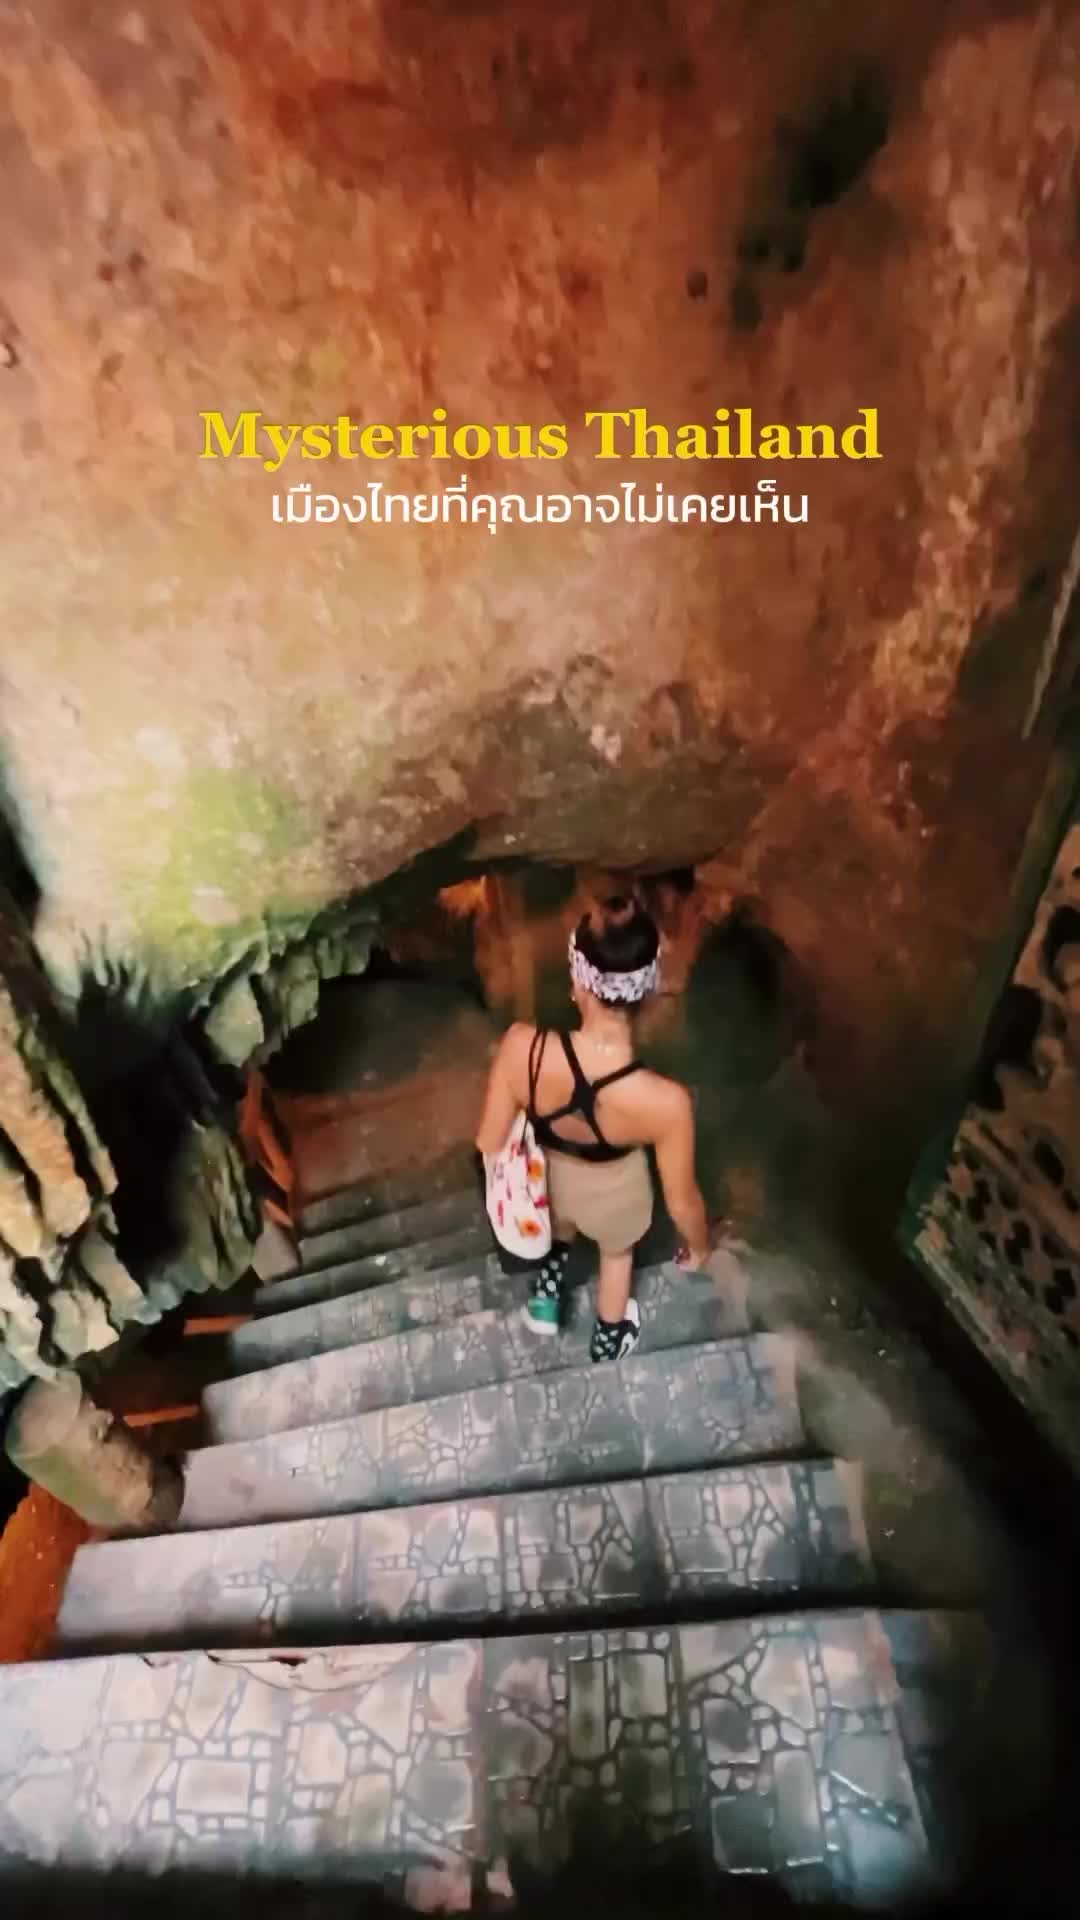 ถ้ำใกล้กรุง ลึกลับมาก!📍 ถ้ำเขาบิน จ.ราชบุรี (Khao Bin Cave, Ratchaburi, Thailand)

#thailandtravel #explorethailand #ราชบุรี #thailandinstagram #unseenthailand #ratchaburi #ถ้ำเขาบิน #thailandtrip #thailand🇹🇭 #caves #เที่ยวเมืองไทยไม่ไปไม่รู้ #เที่ยวไทย